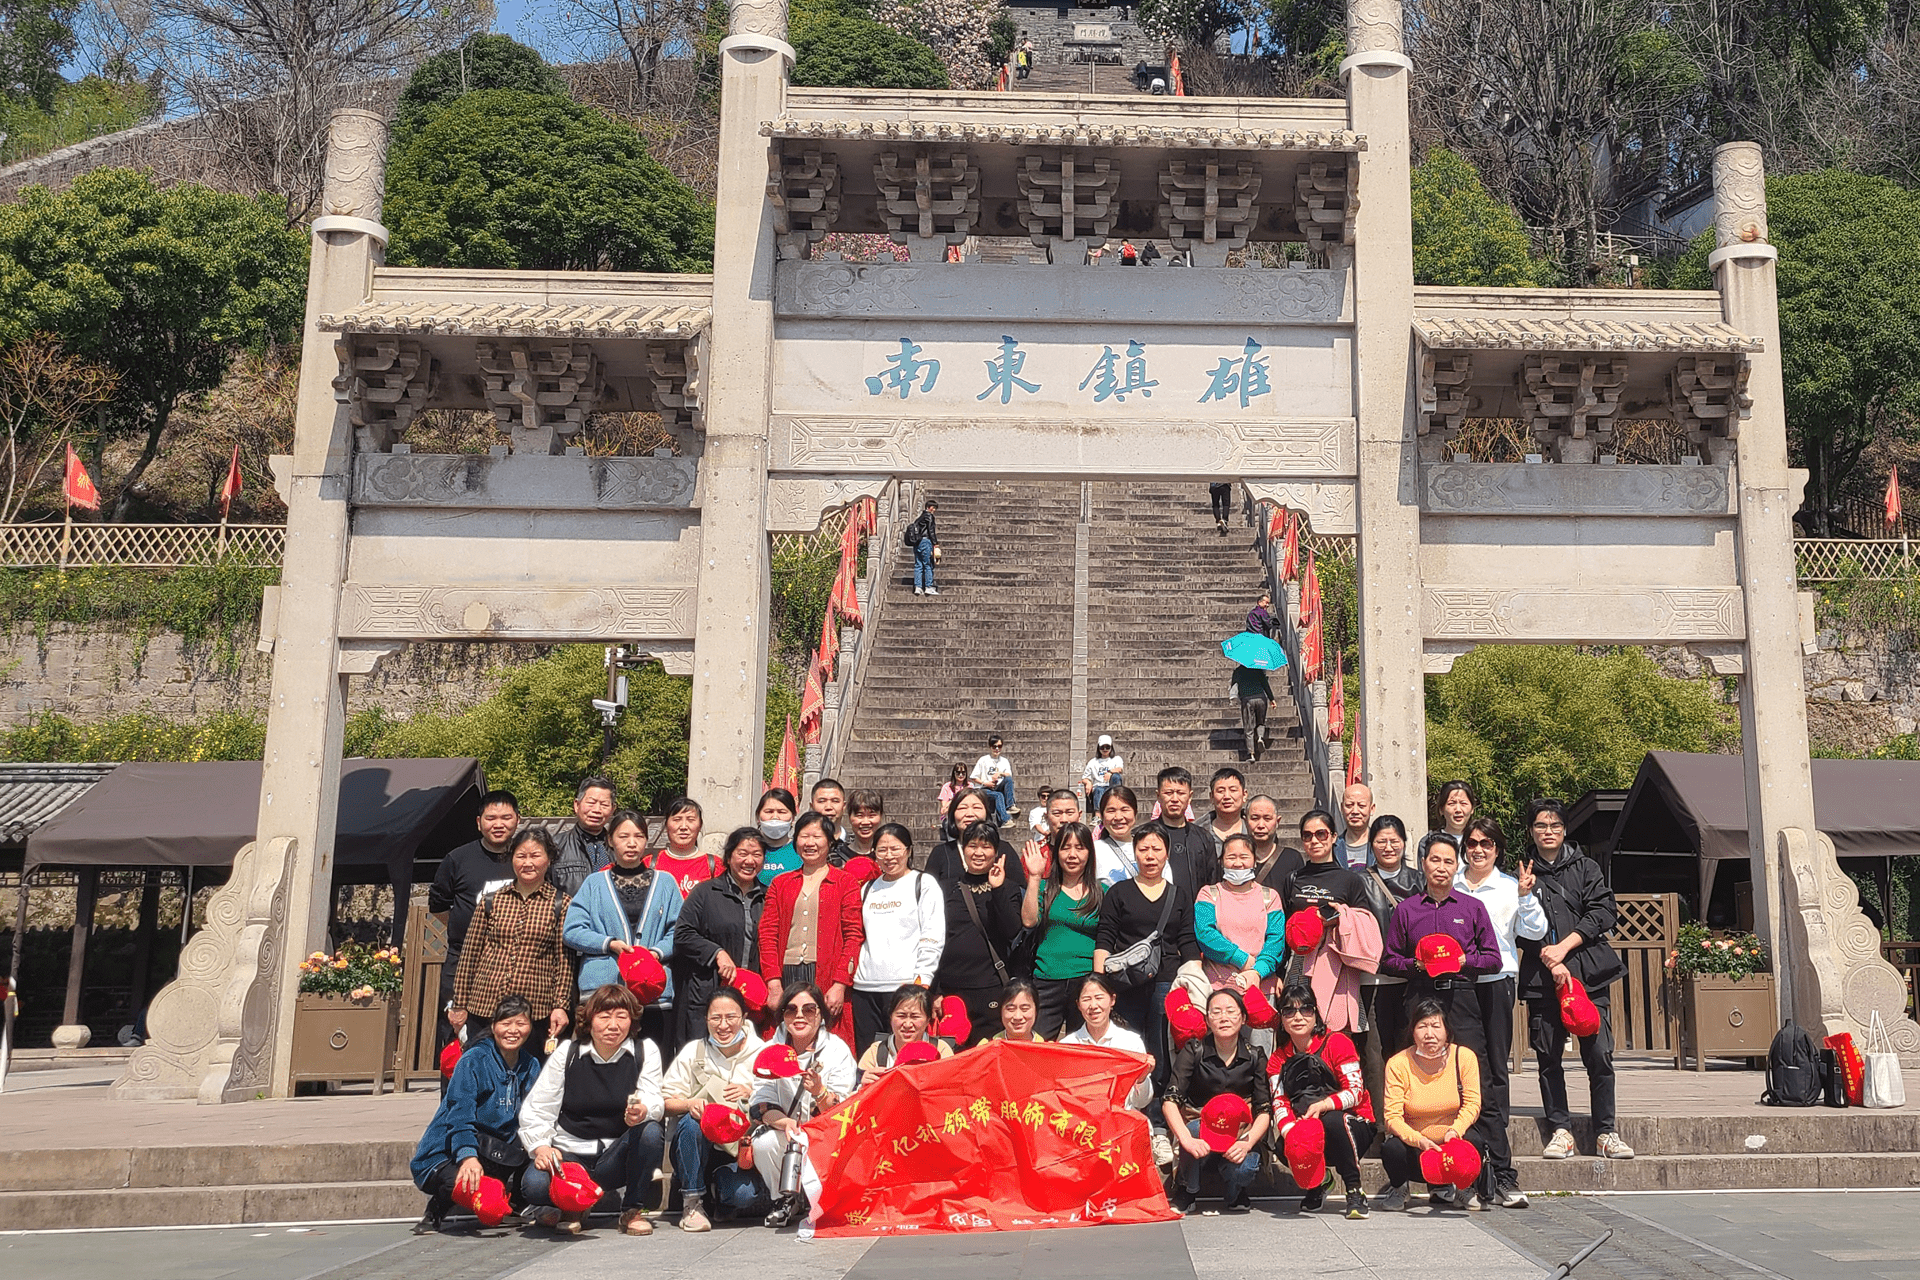 2023 ခုနှစ် မတ်လ 8 ရက်နေ့တွင် အပြည်ပြည်ဆိုင်ရာ အမျိုးသမီးများနေ့တွင် YiLi tie သည် အလုပ်သမားများအတွက် Taizhou Linhai သို့ တစ်ရက်တာ ခရီးစဉ်ကို စီစဉ်ခဲ့သည်။